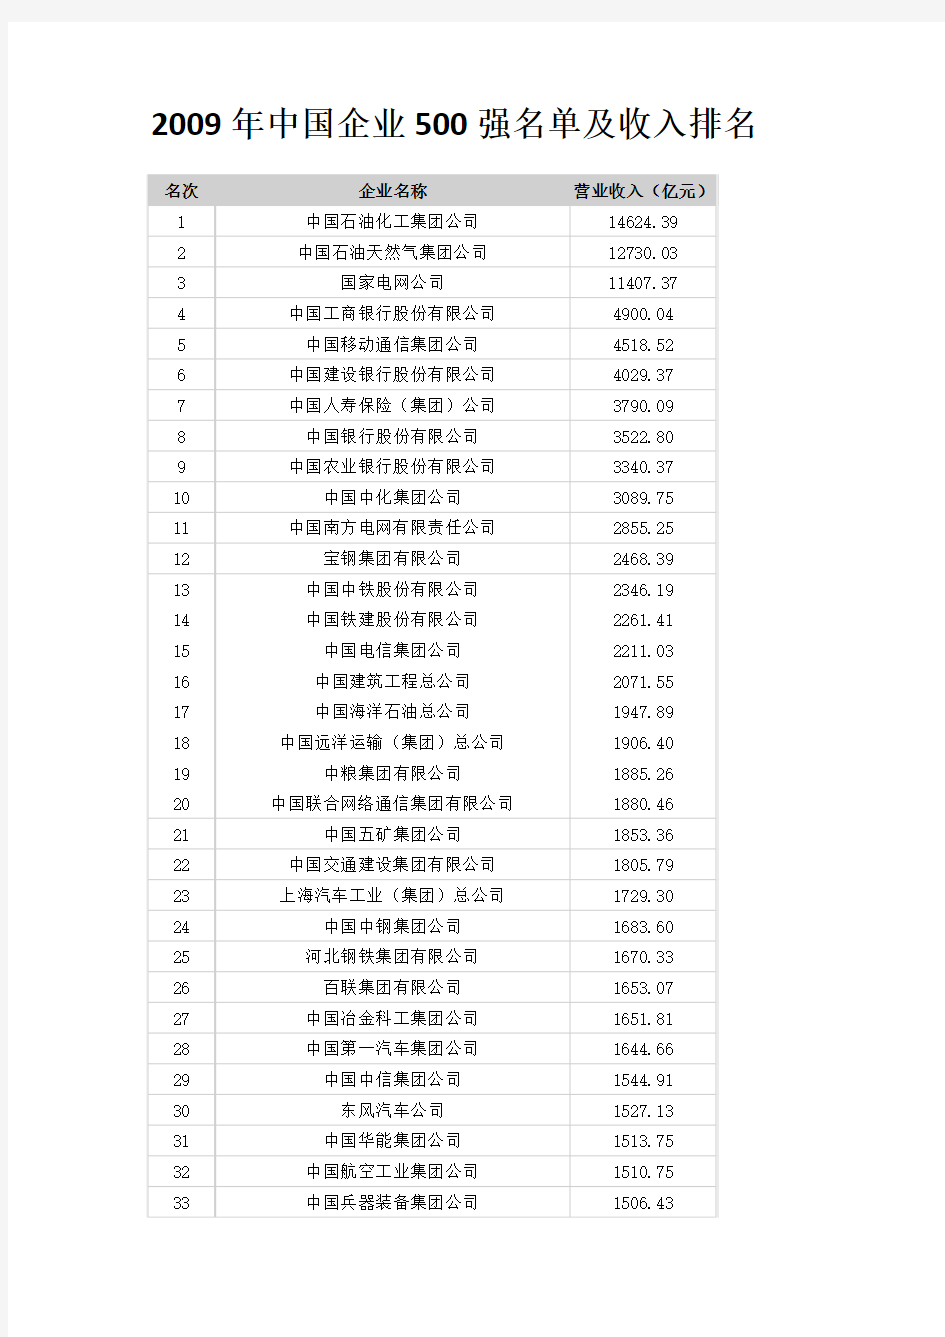 2009年中国企业500强名单及收入排名